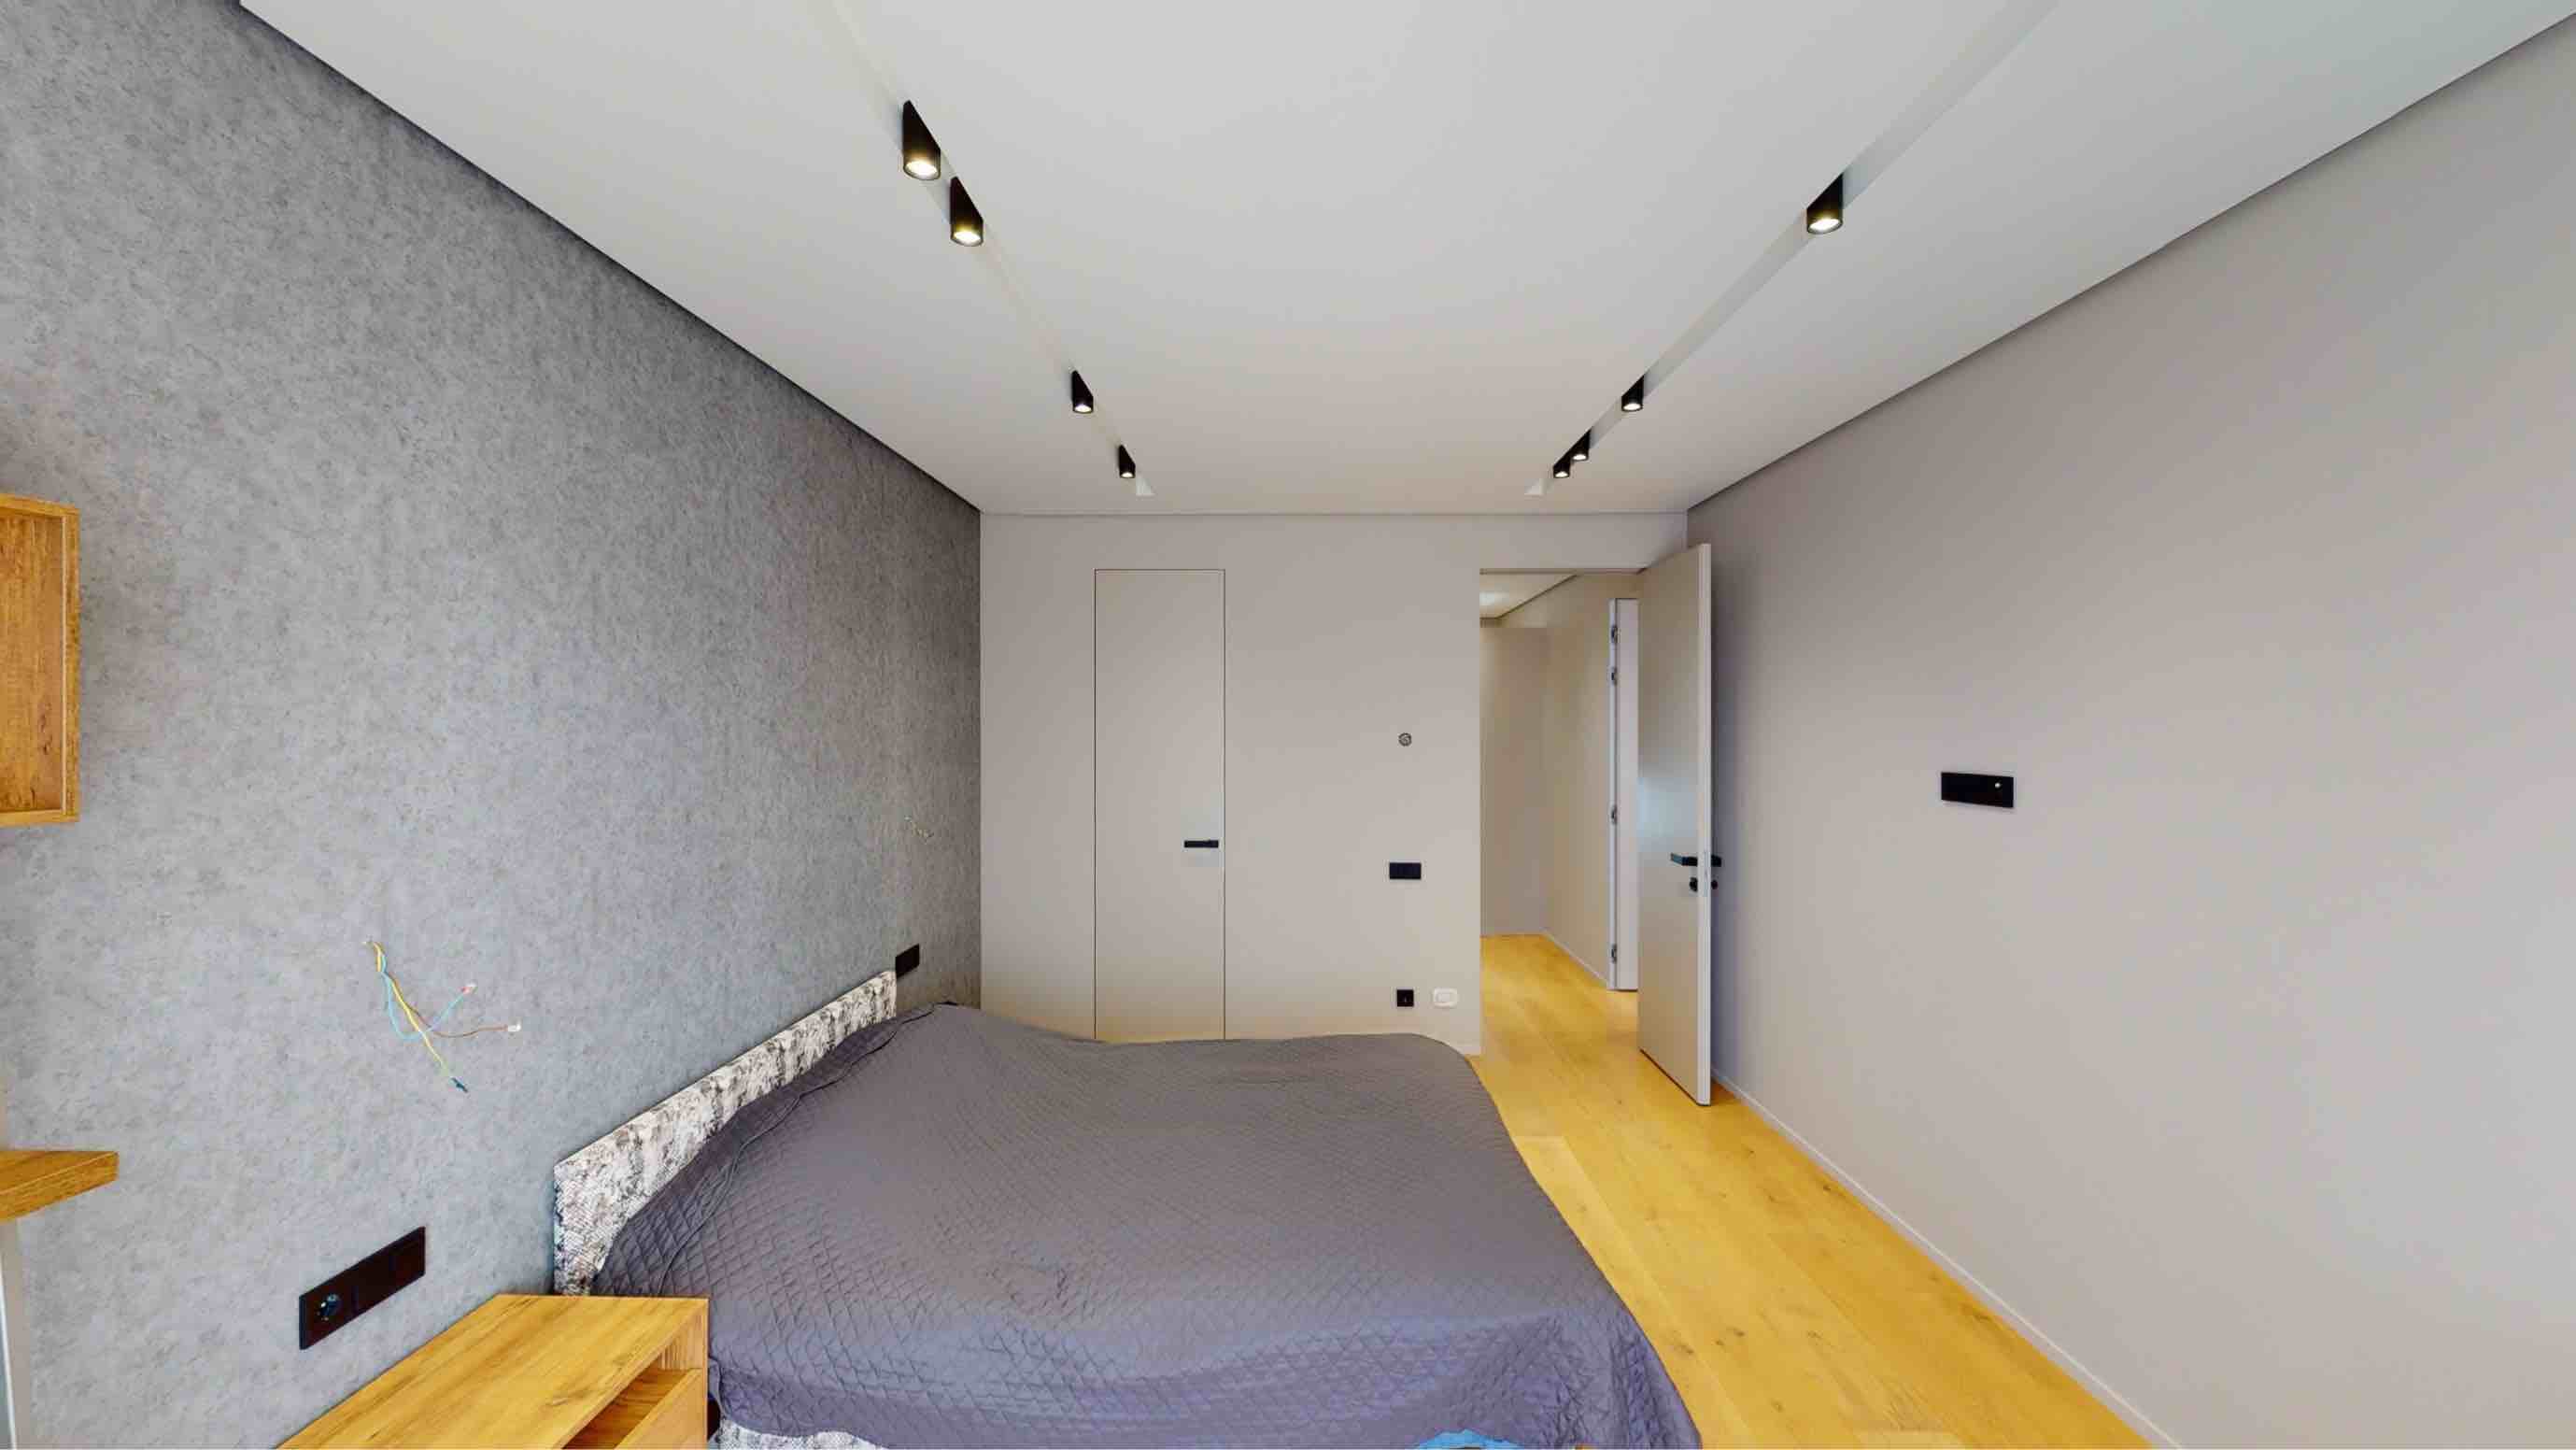 Duplex house in Telecenter 250 m2